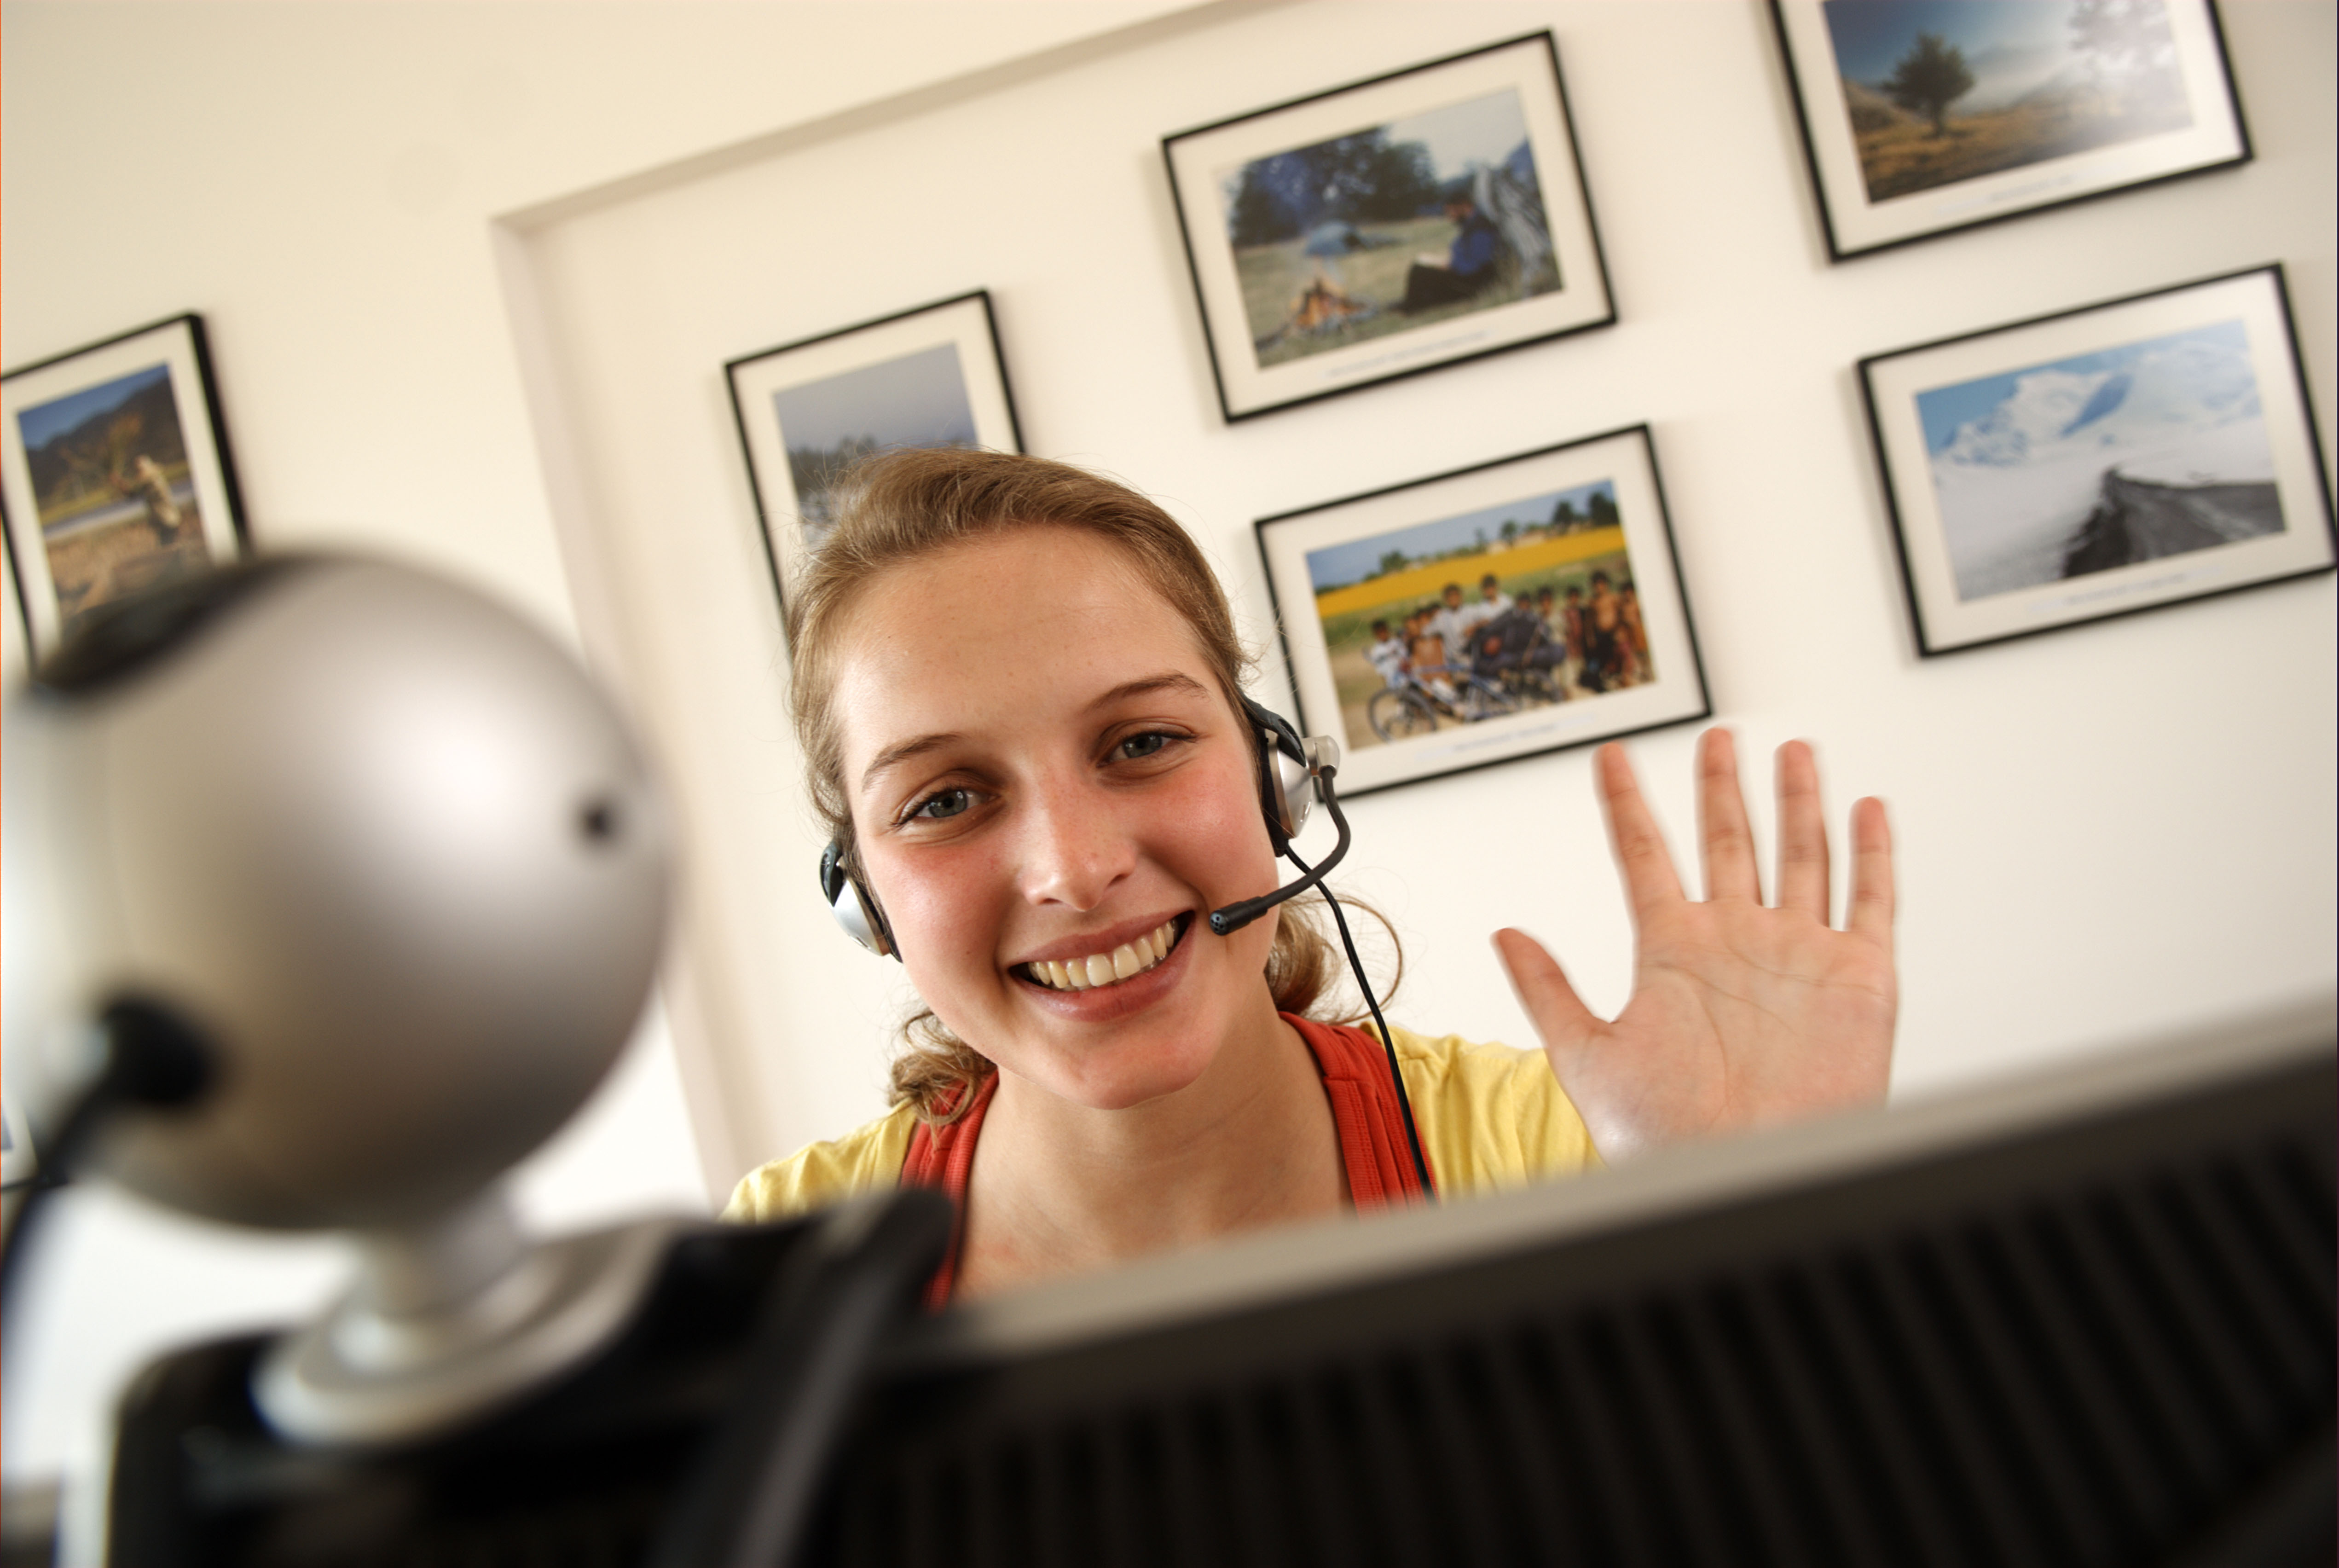 Image illustrating a woman waving at a webcam